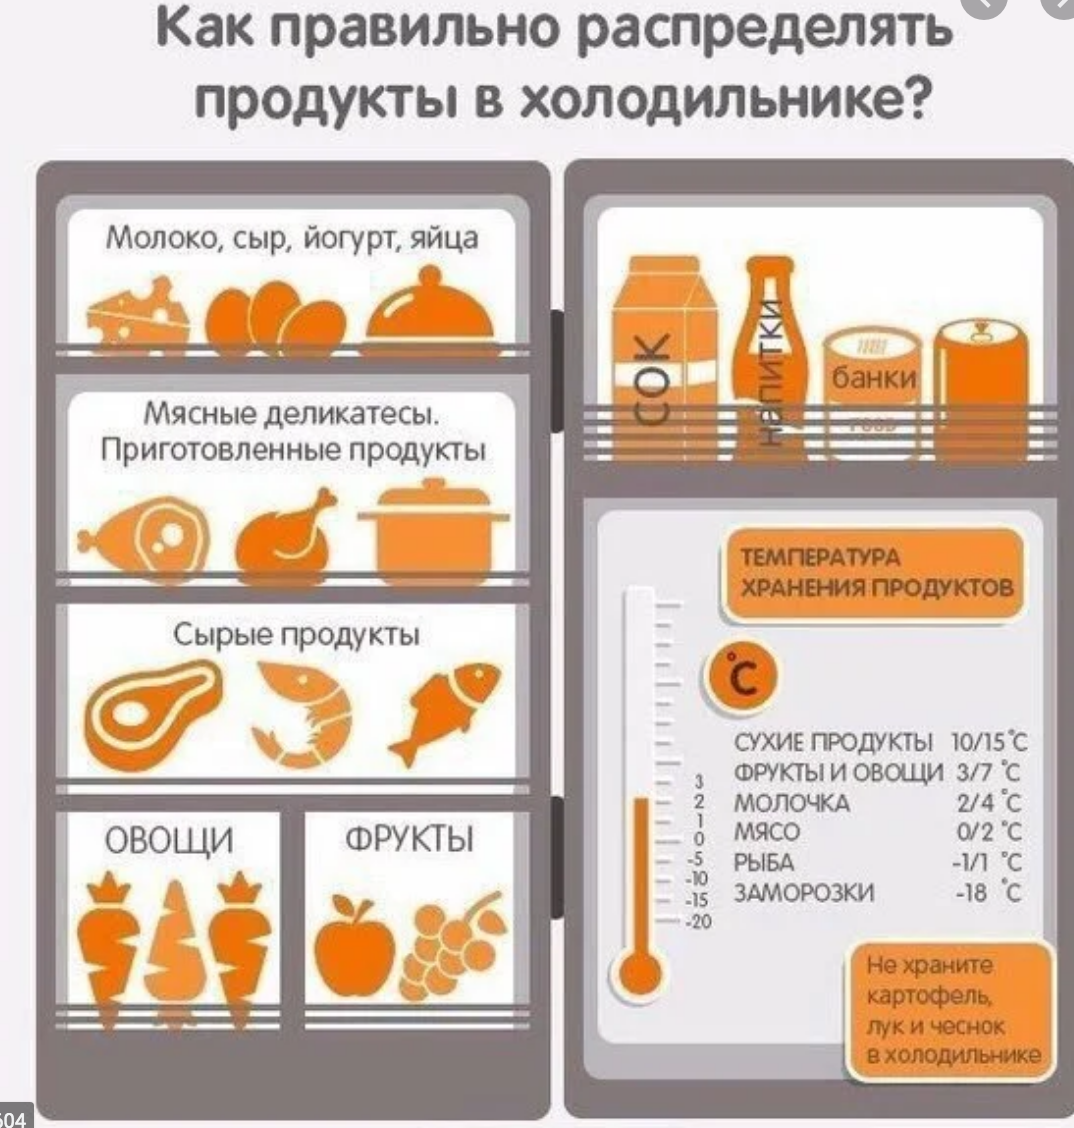 Порядок в холодильнике за 7 шагов - правильная организация хранения продуктов